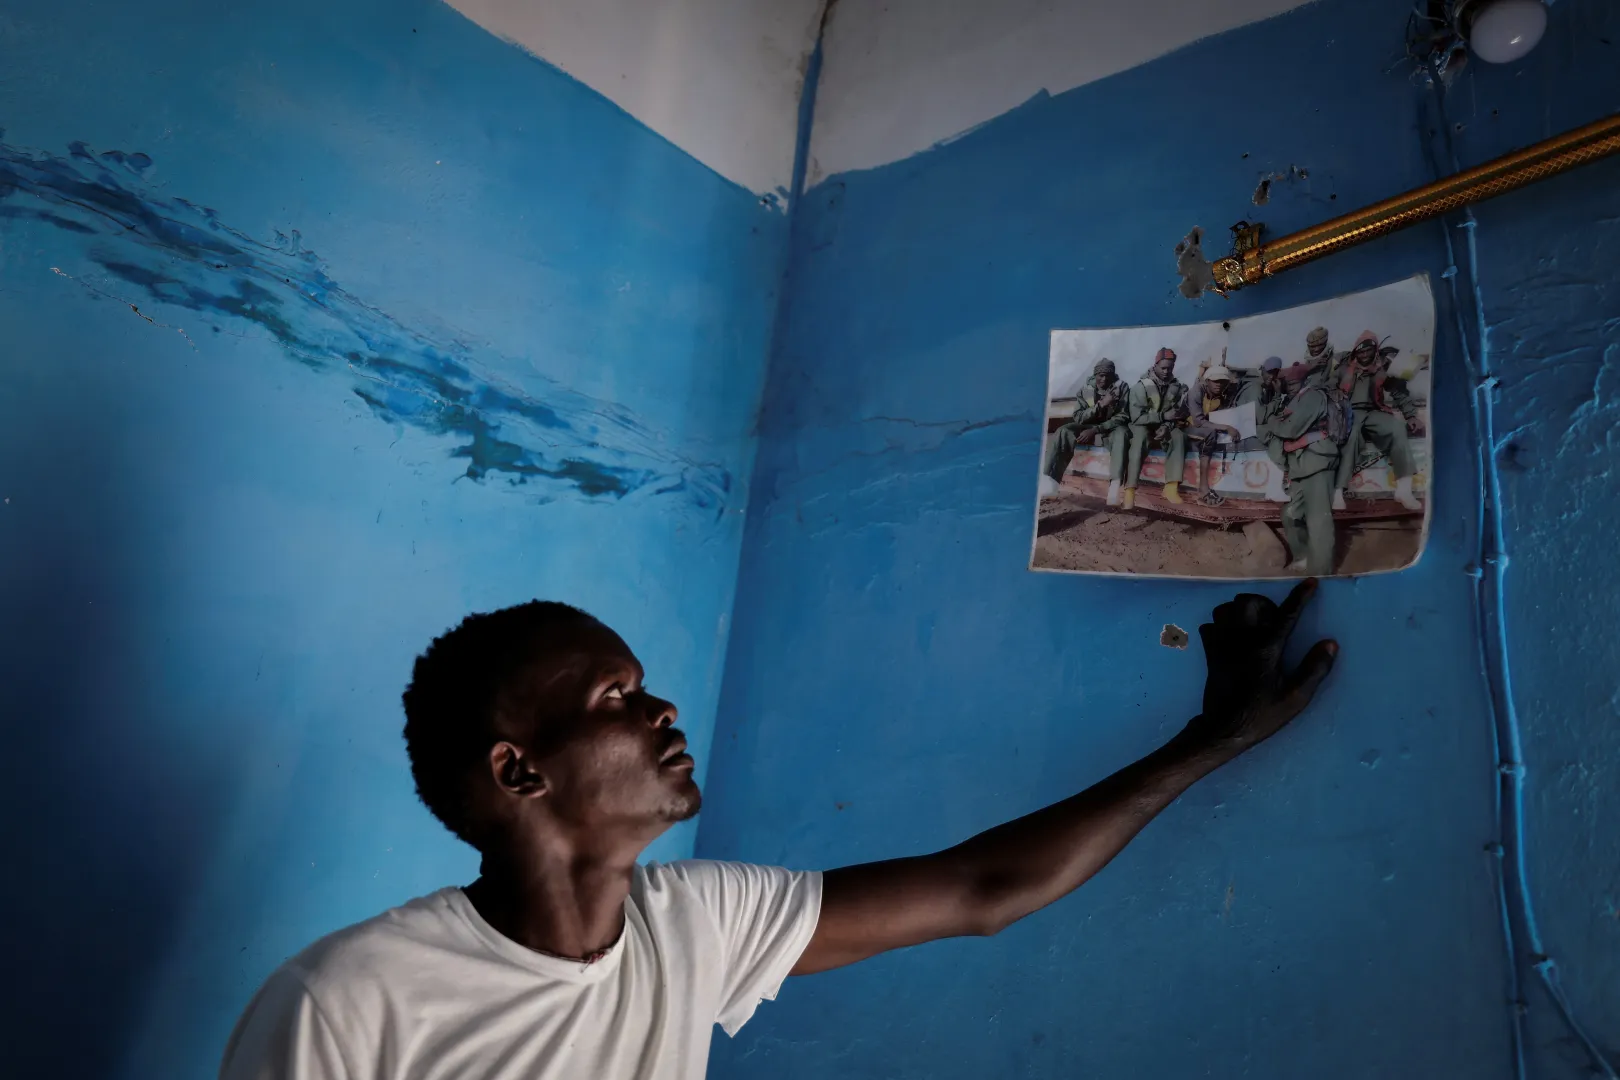 Mbaye halásztársait mutatja, akik közül hárman eljutottak Spanyolországba, egyikük meghalt a tengeren, a többiek a halászfaluban maradtak – Fotó: Zohra Bensemra / Reuters